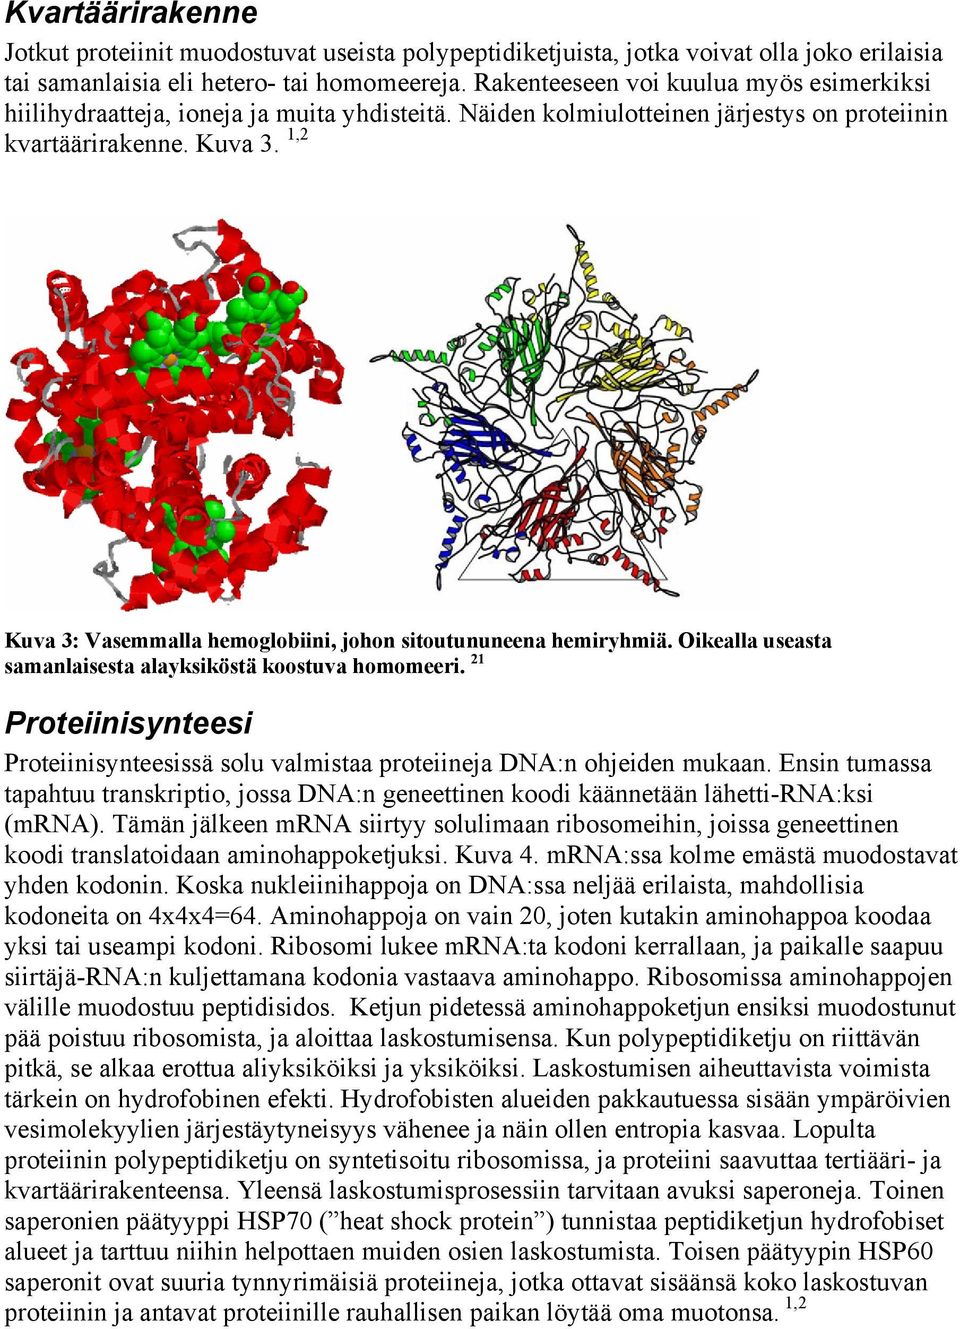 1,2 Kuva 3: Vasemmalla hemoglobiini, johon sitoutununeena hemiryhmiä. Oikealla useasta samanlaisesta alayksiköstä koostuva homomeeri.